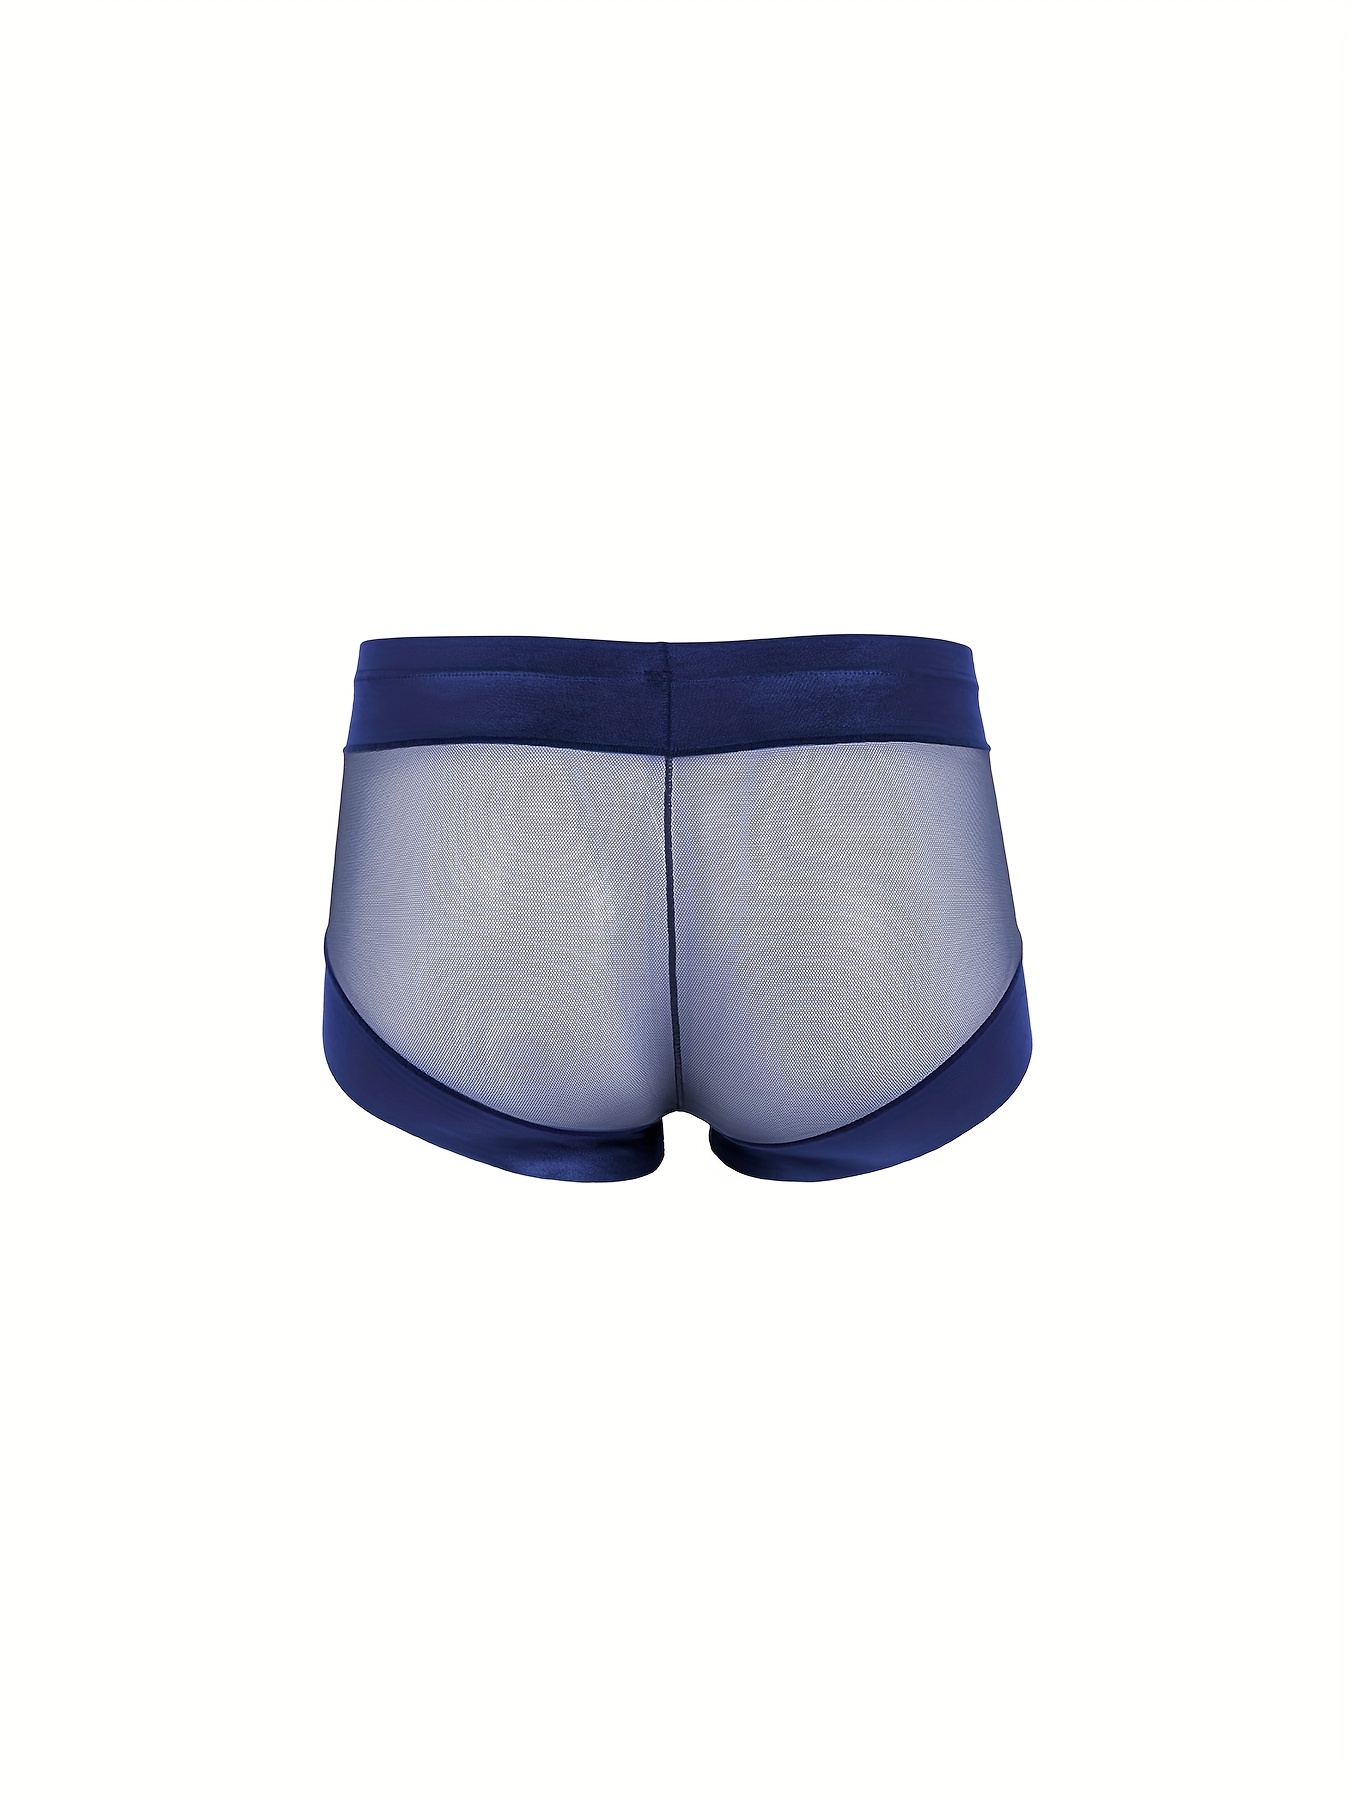 Transparent Mesh Men Briefs Underwear Breathable Underpants